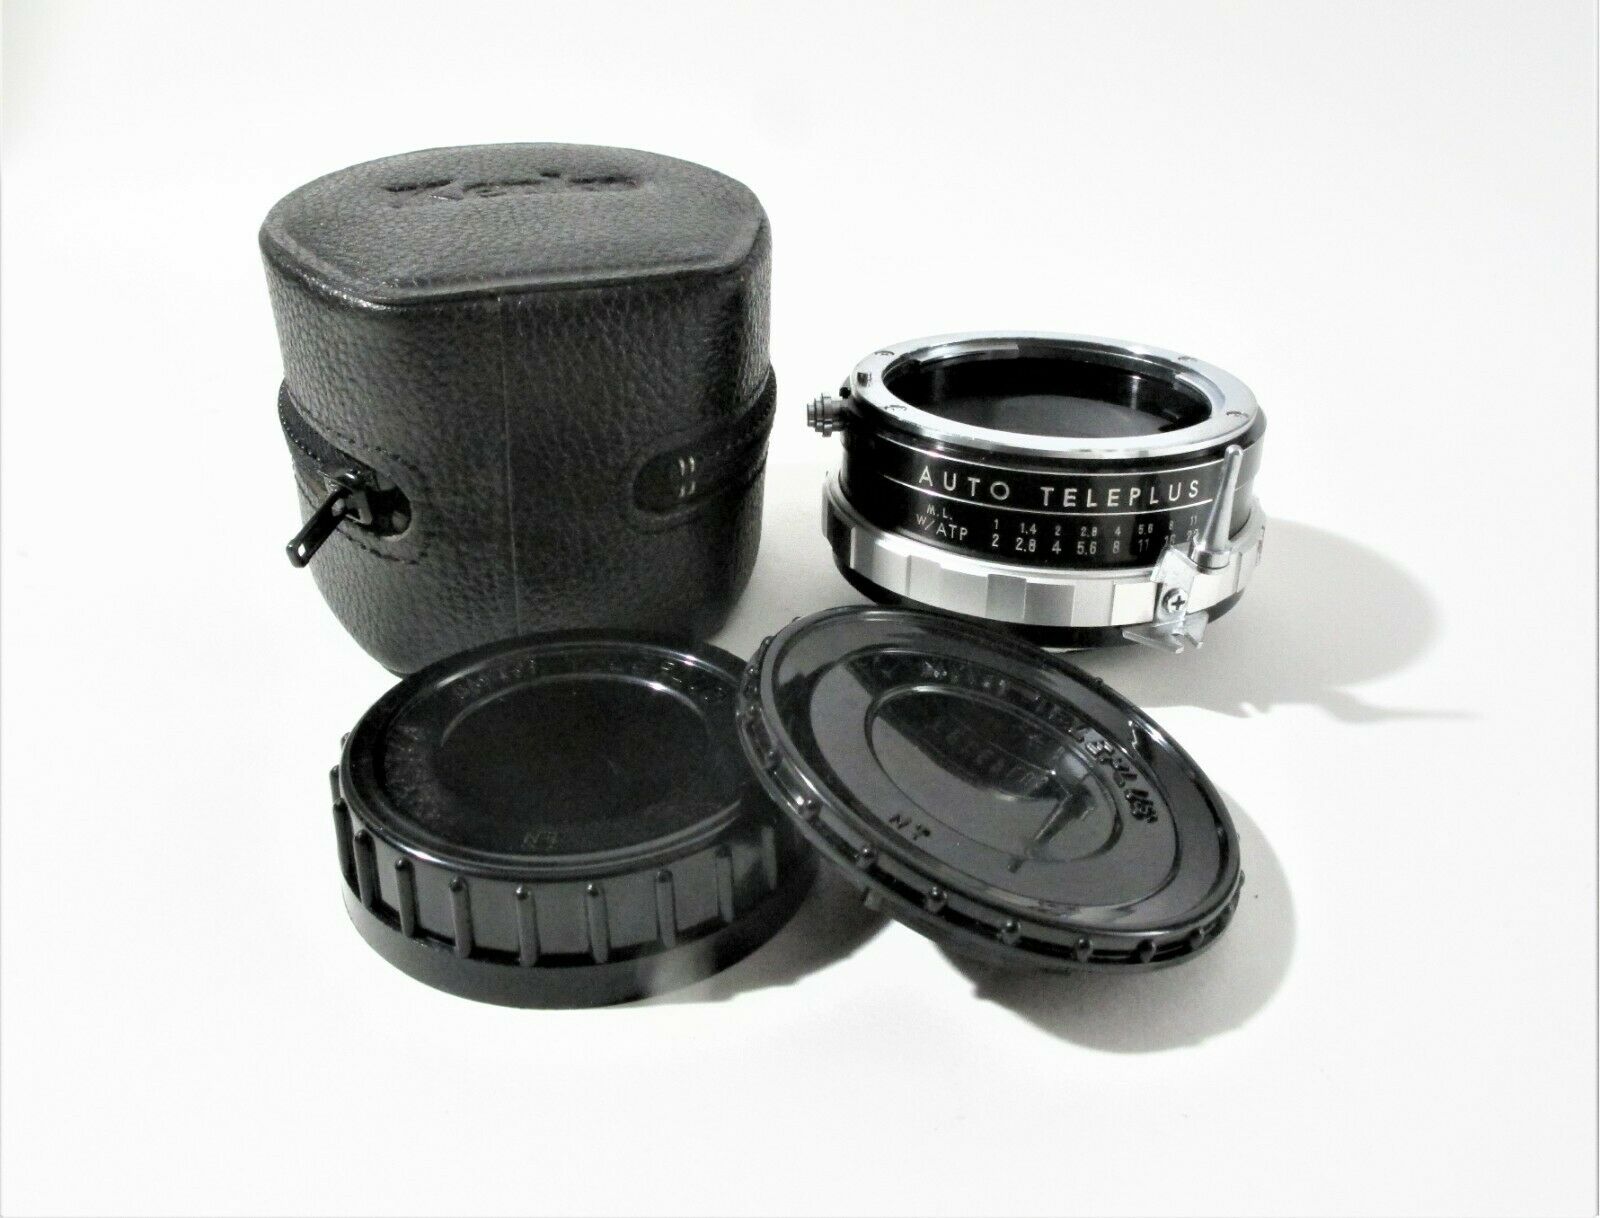 Kenko Nt Auto Teleplus 2x Converter For Nikon F W/case And Caps